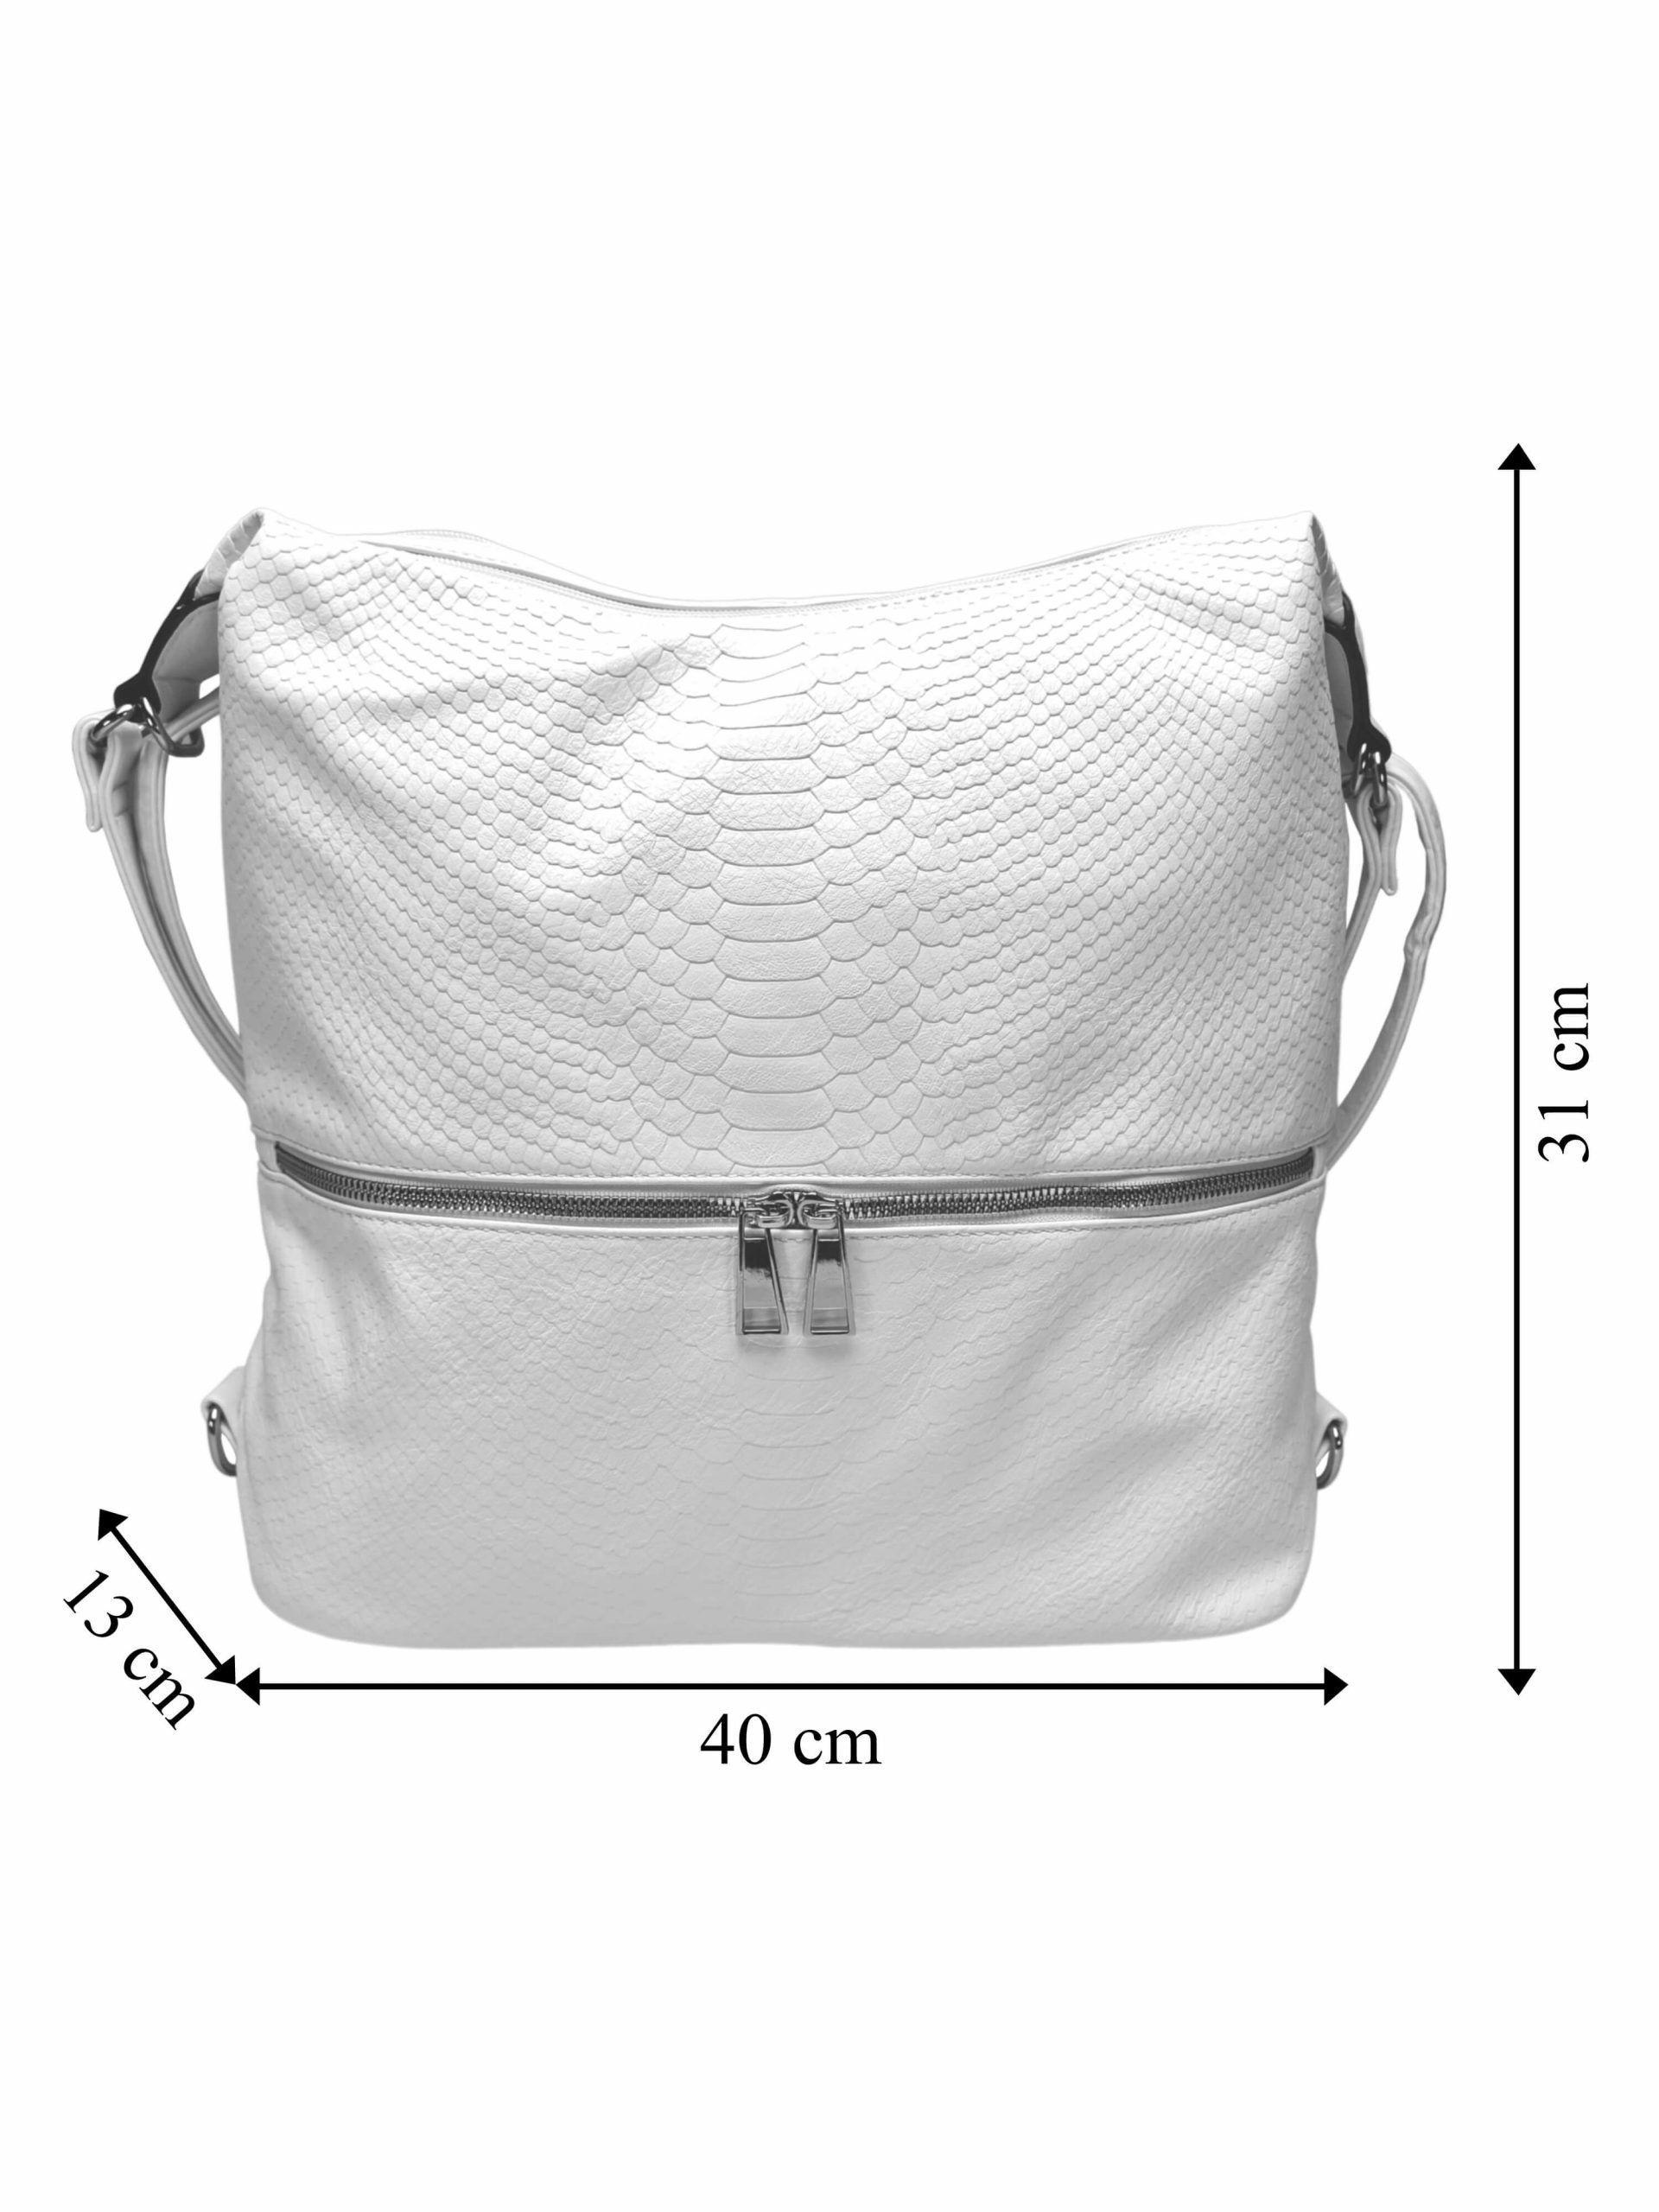 Moderní bílý kabelko-batoh z eko kůže, Tapple, H190010, přední strana kabelko-batohu 2v1 s rozměry